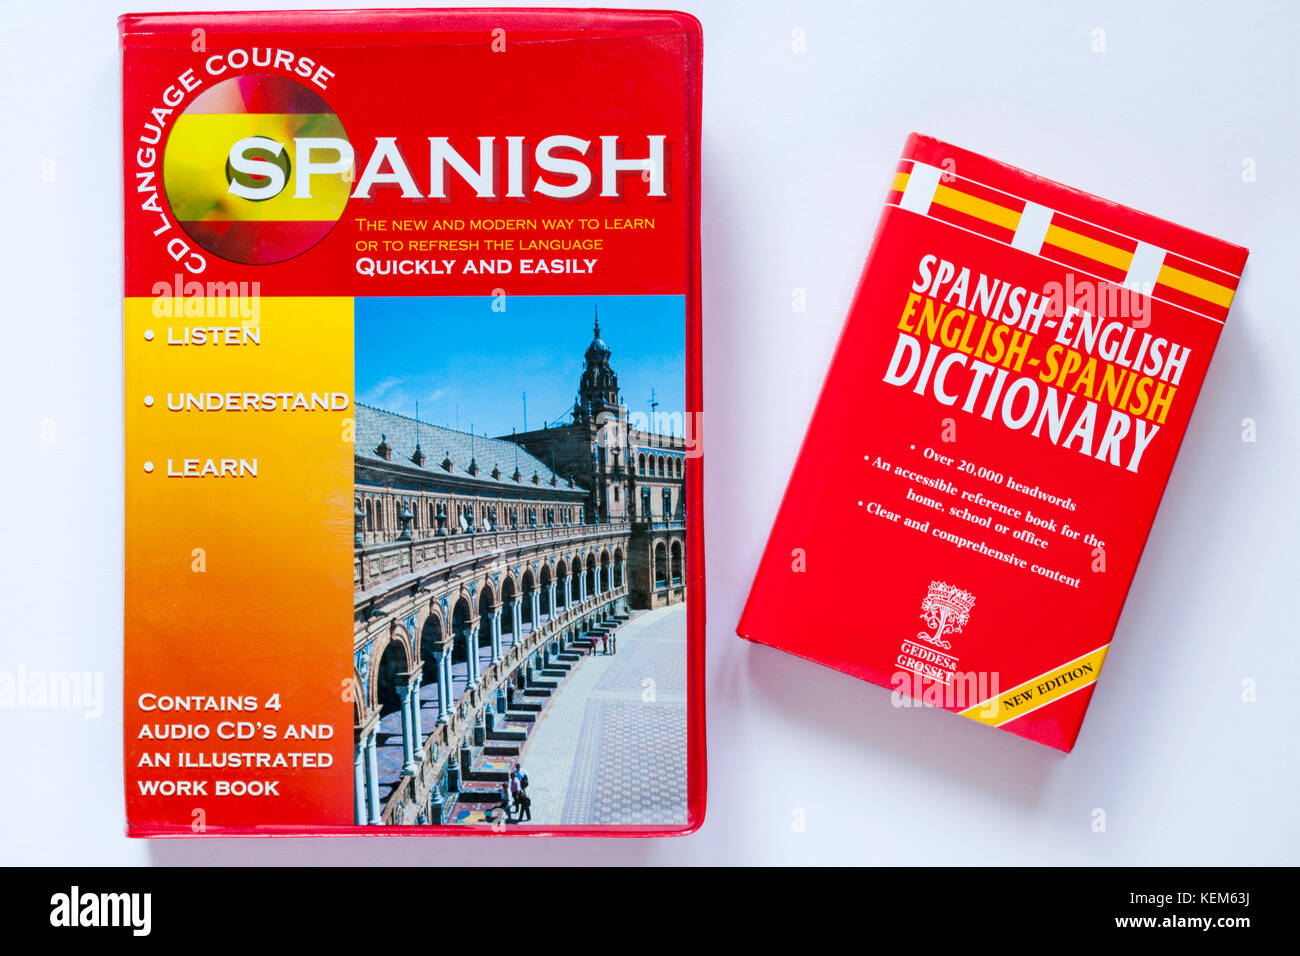 Curso de lengua española de CD contiene 4 CDs de audio y un libro ilustrado con diccionario inglés español aislado sobre fondo blanco. Foto de stock